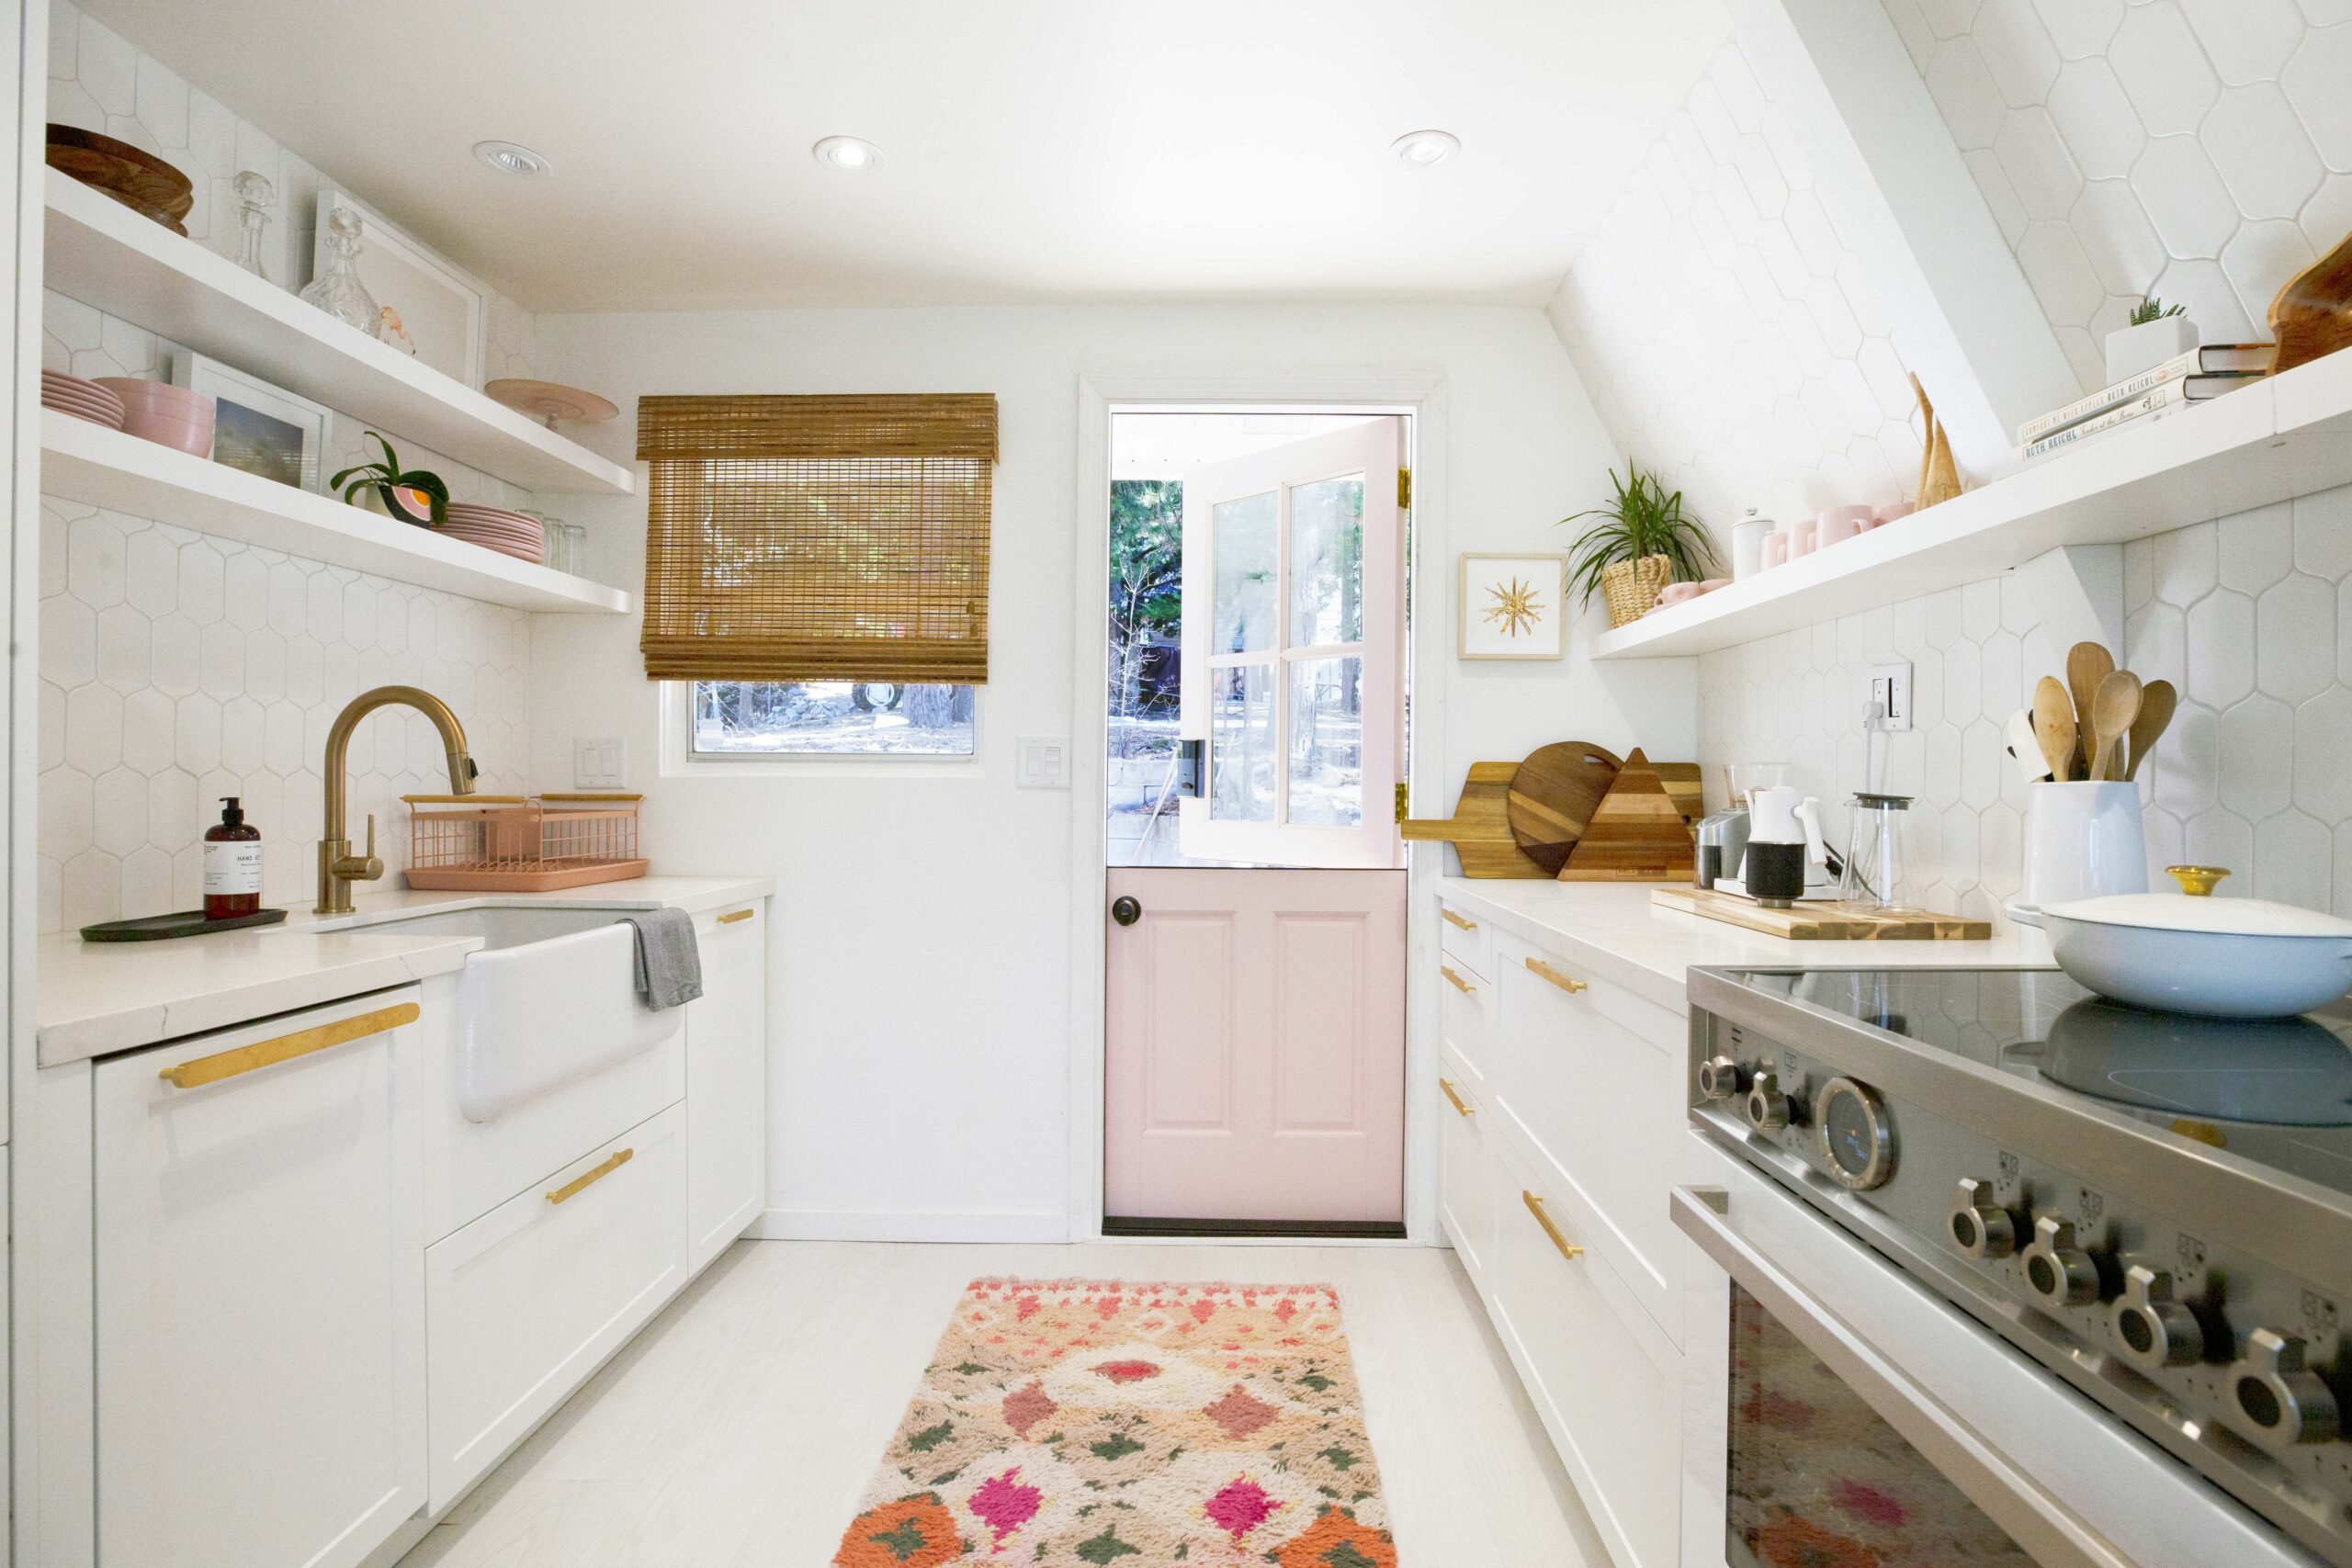 White kitchen with pink door